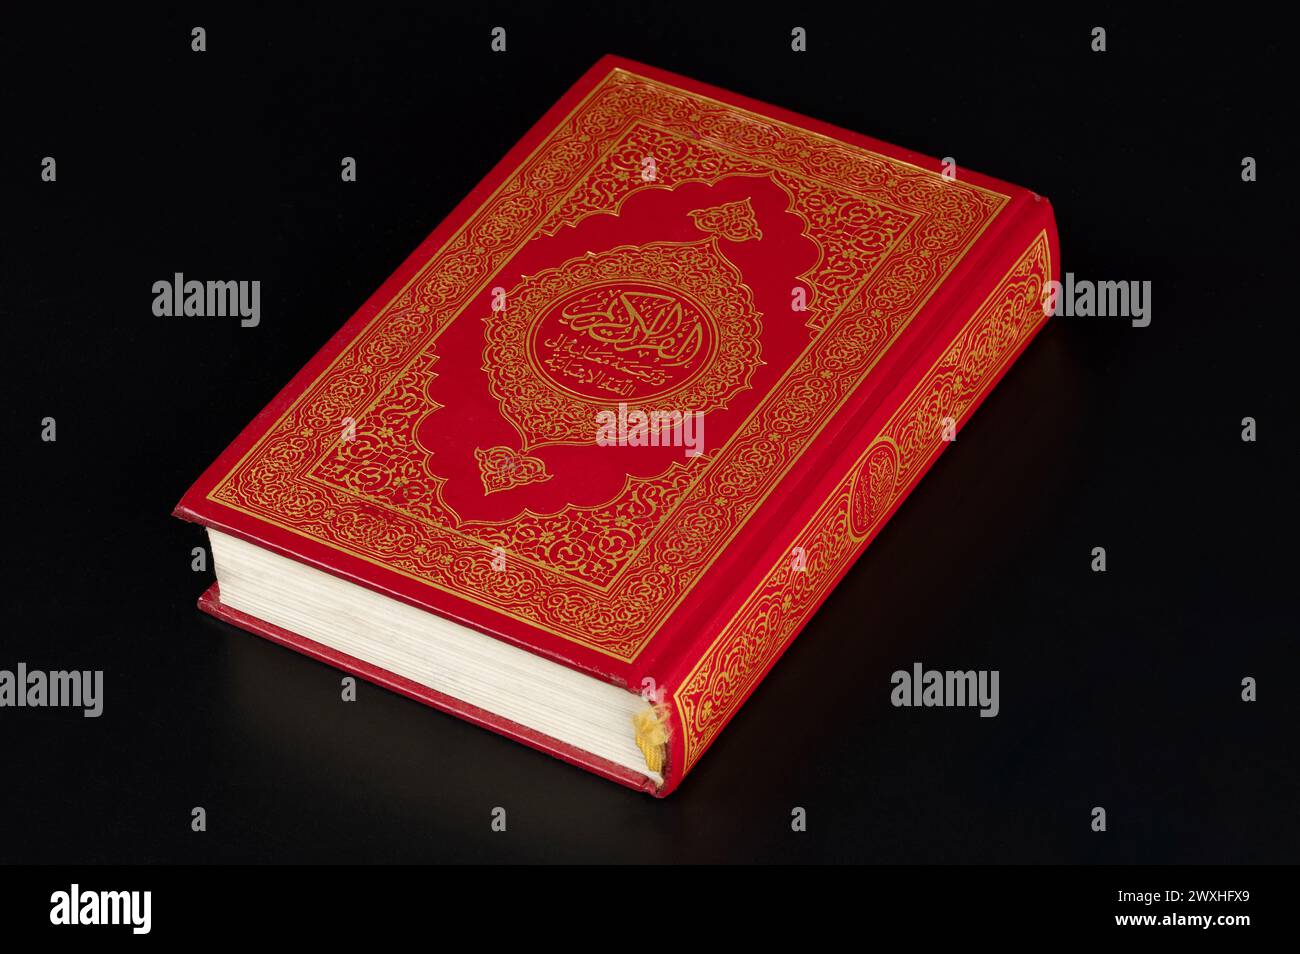 le coran musulman a fermé le livre en couverture rigide rouge isolé sur fond noir de studio Banque D'Images